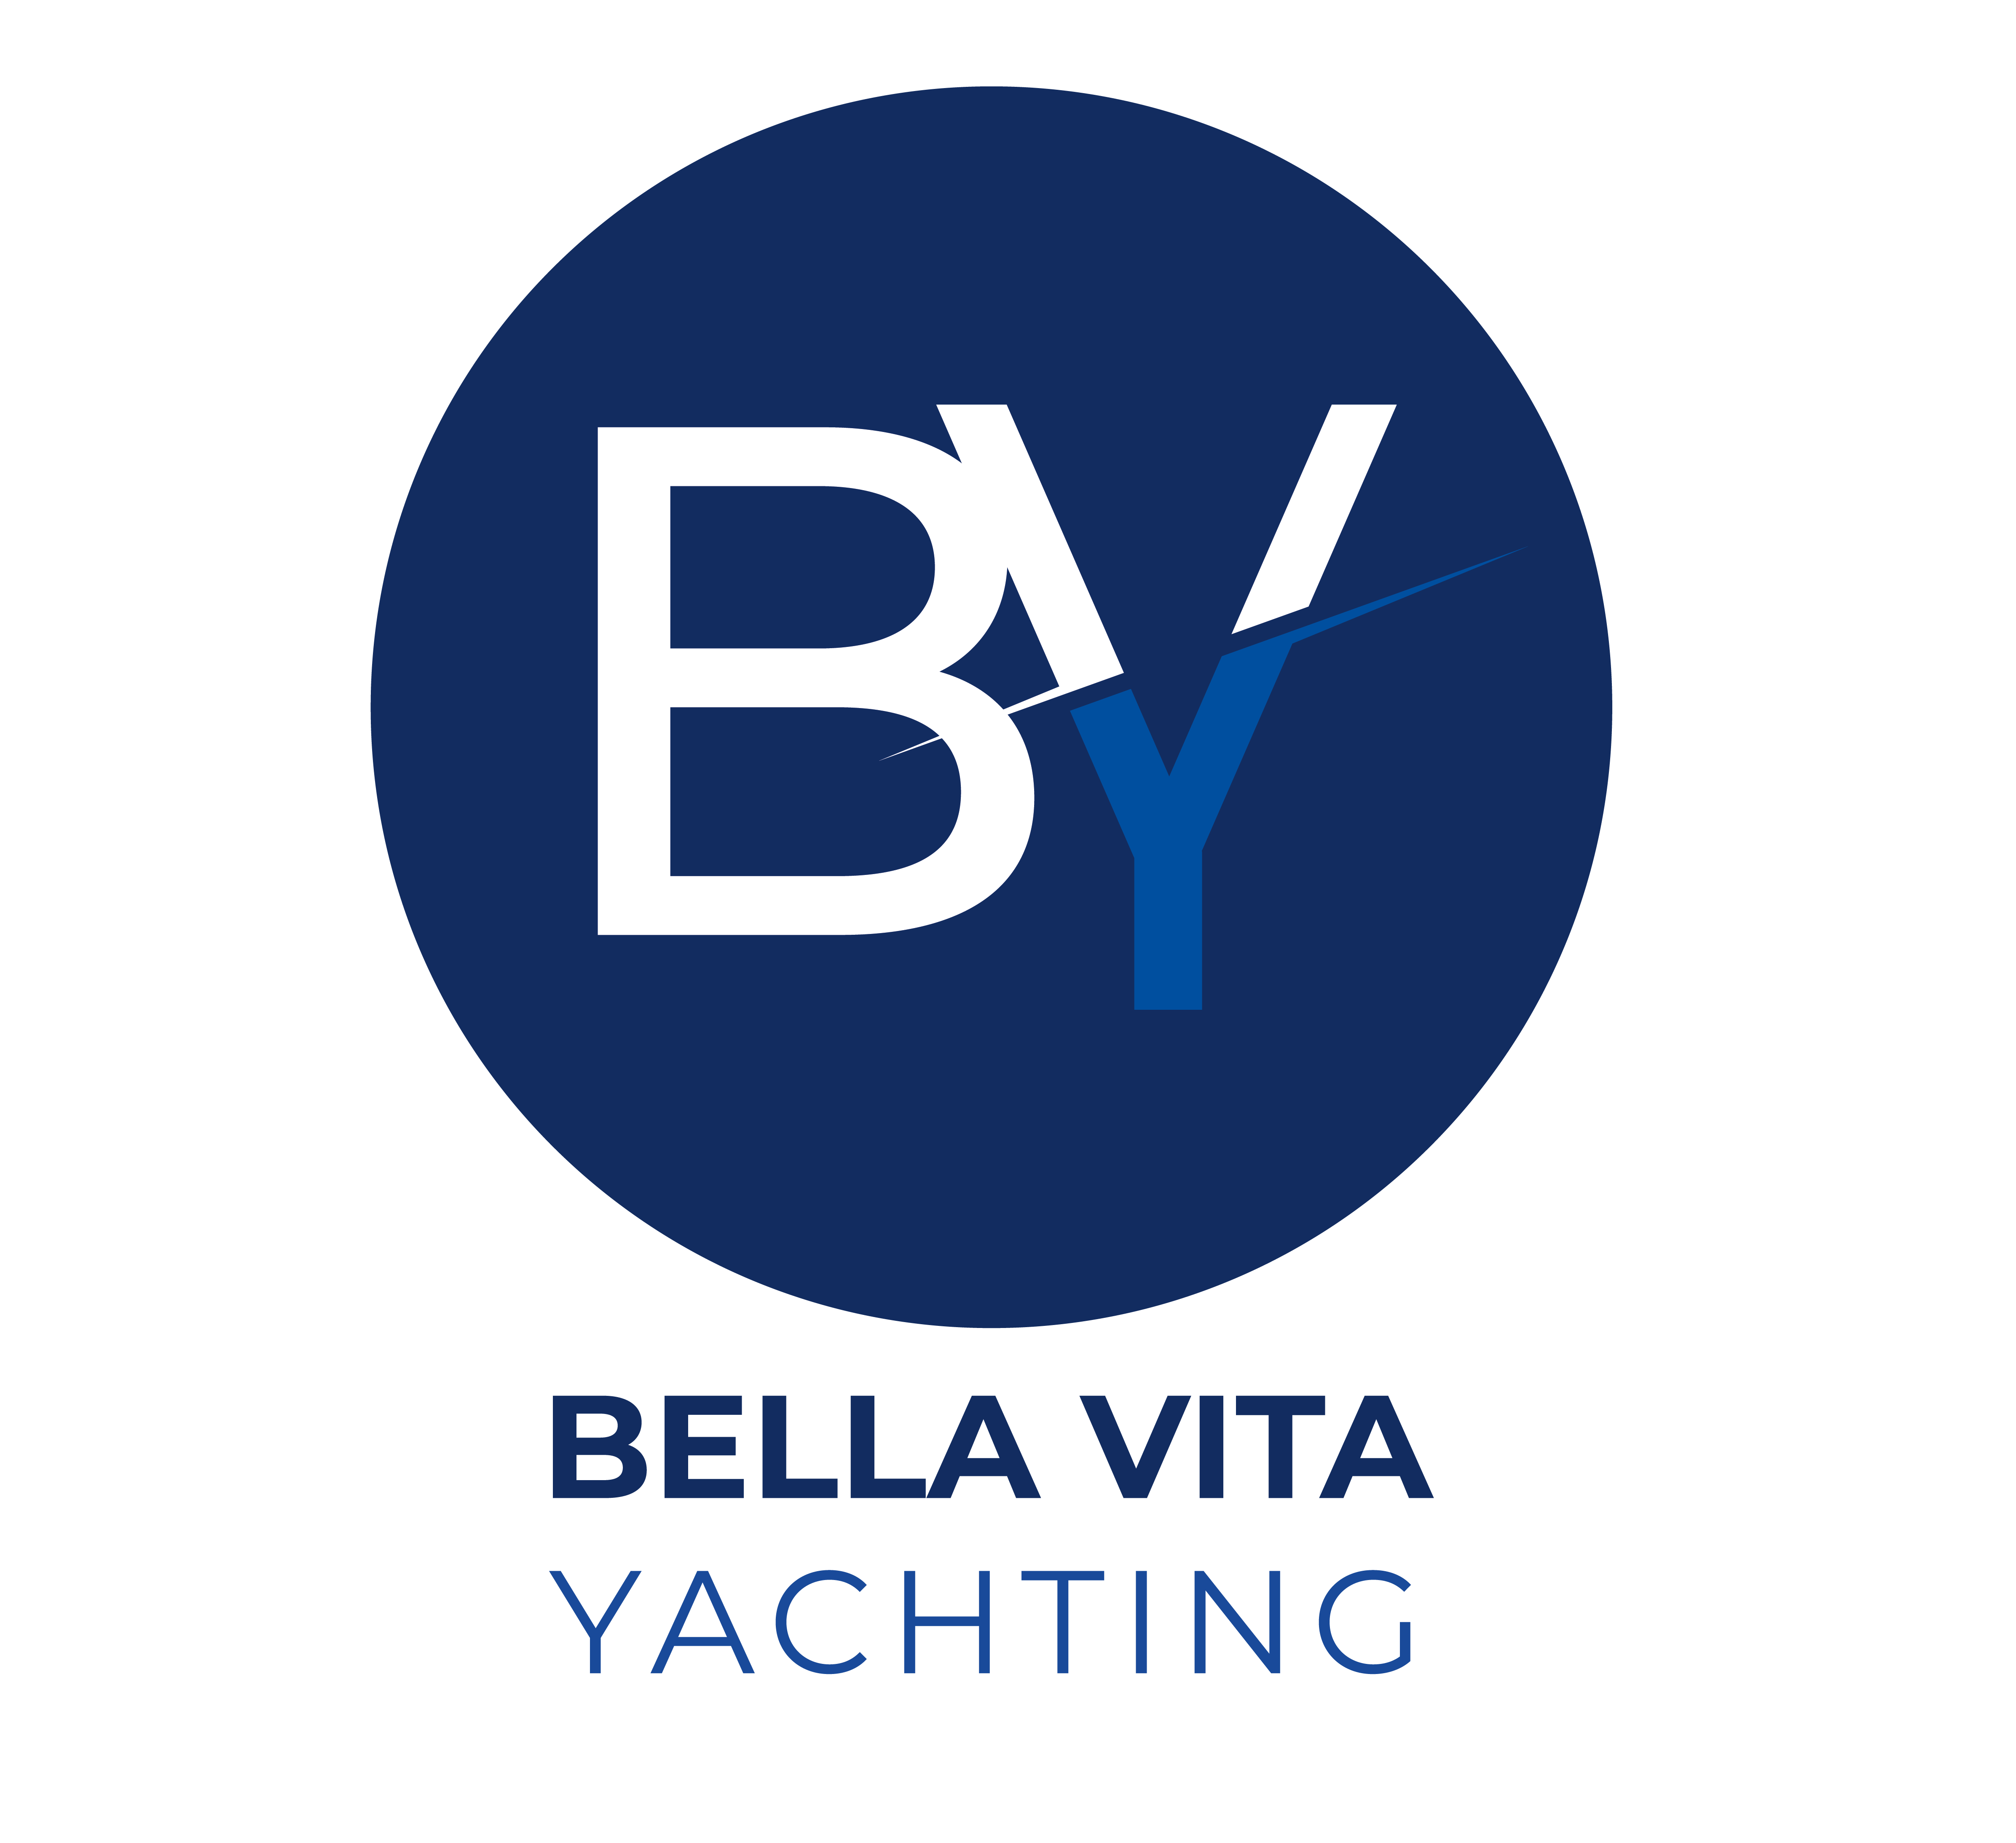 Bella Vita Yachting | Exporting the Italian good life